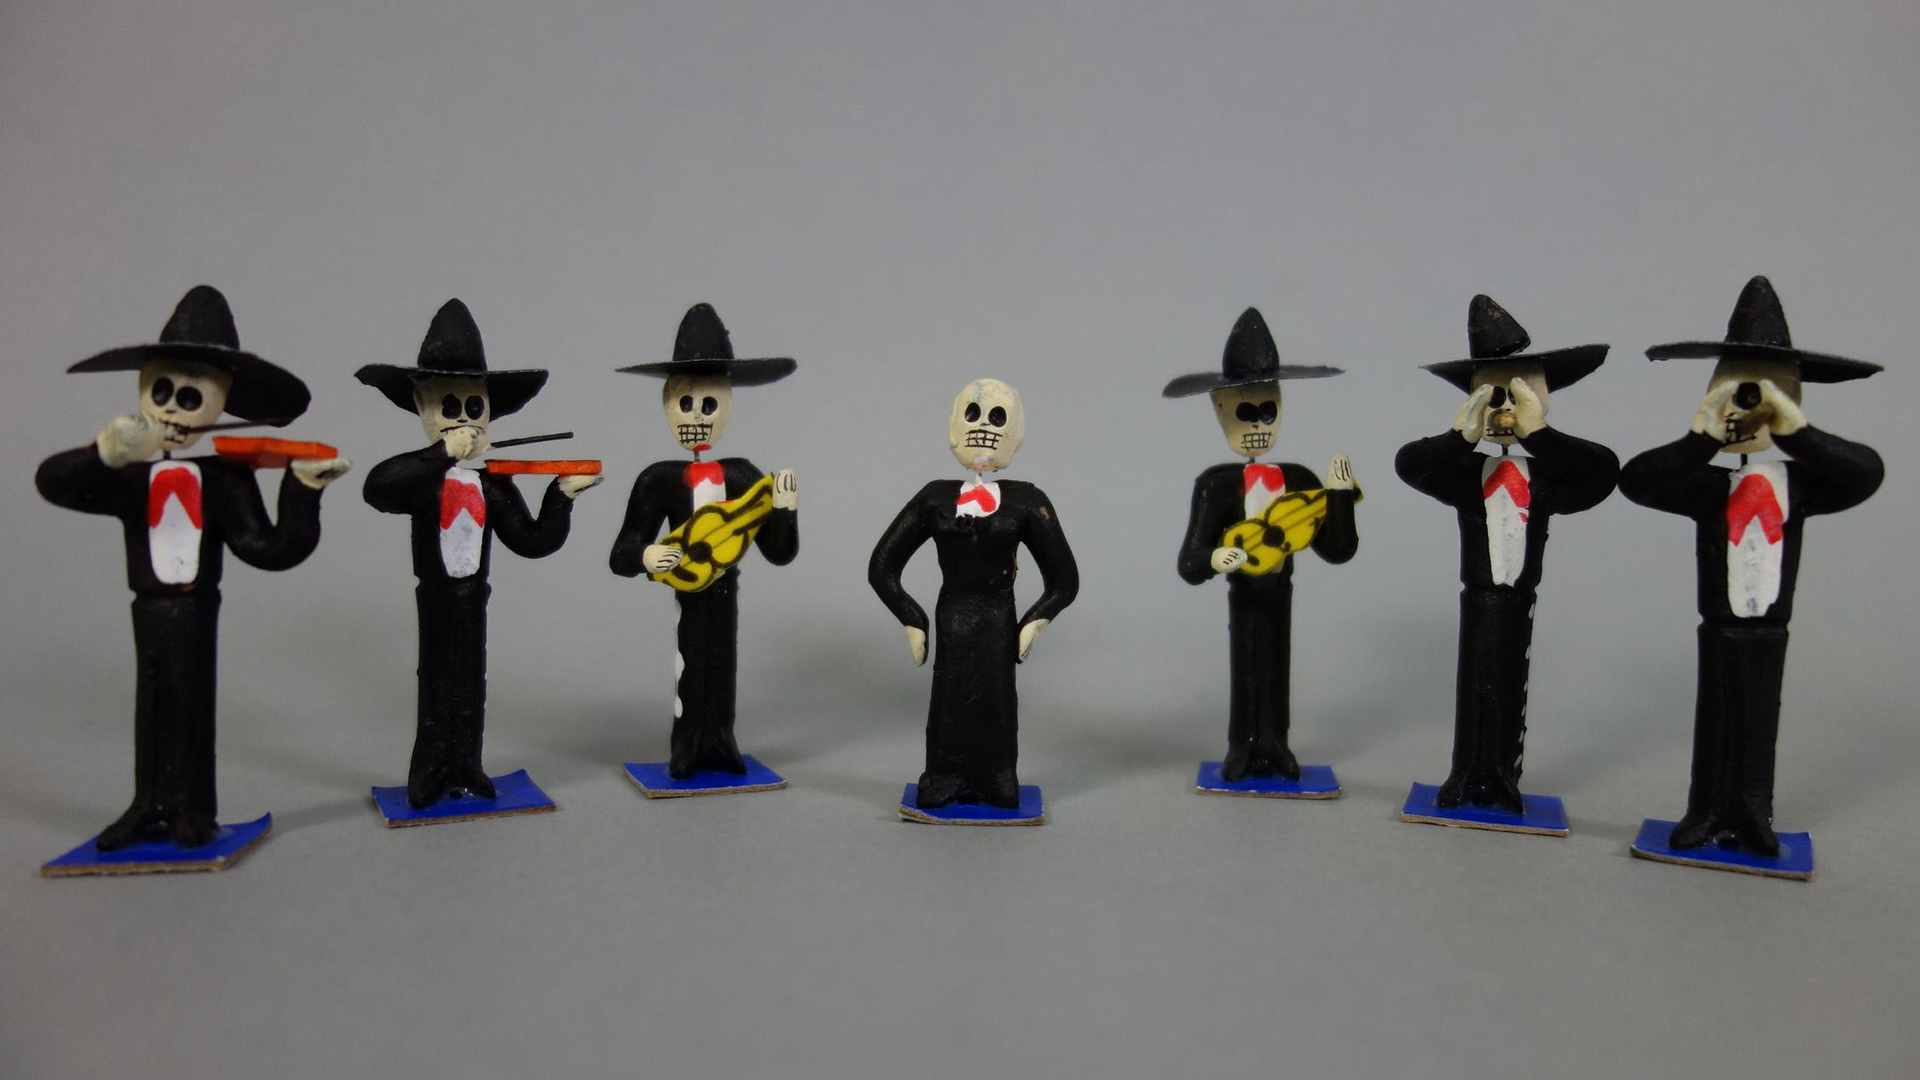 Toy skeleton mariachi band